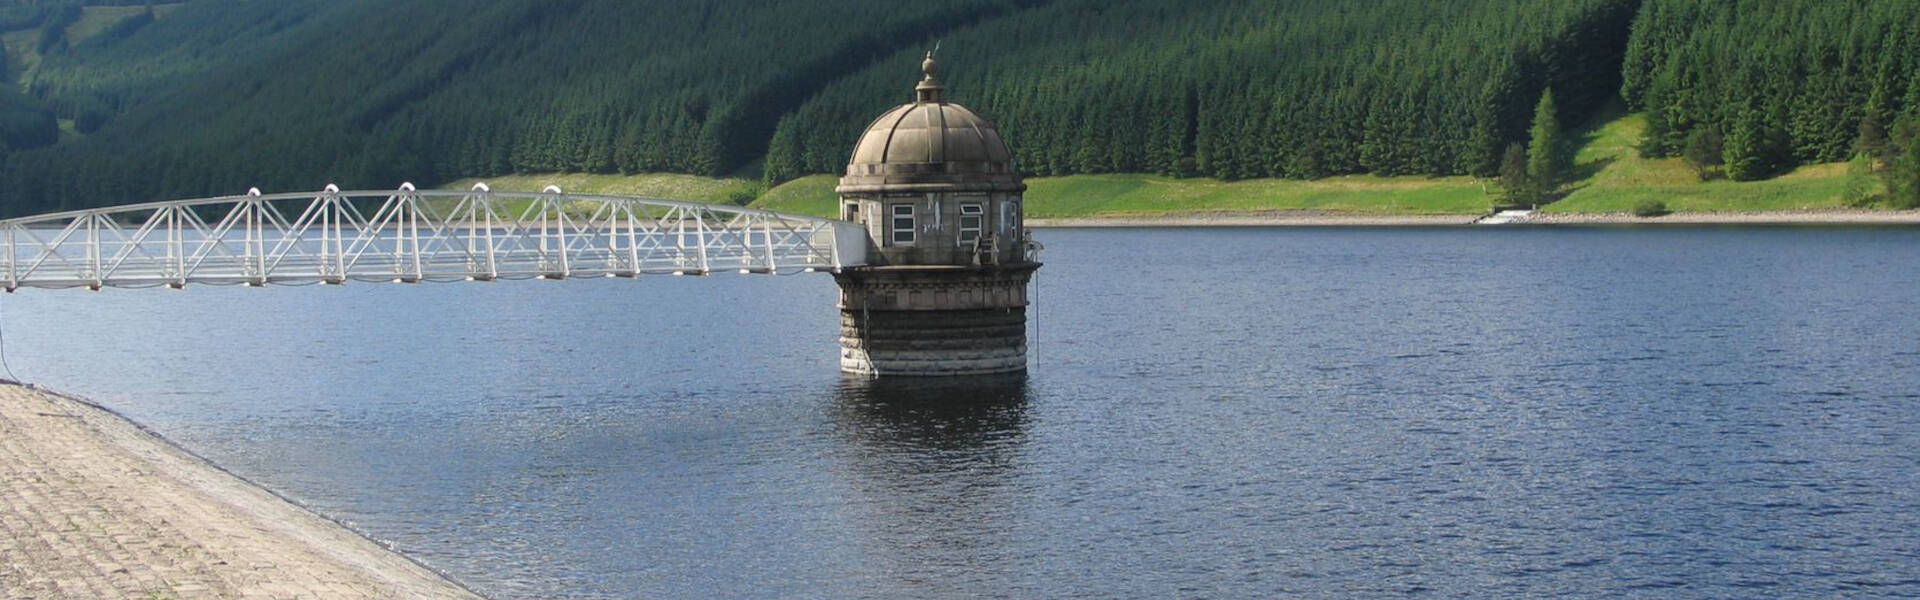 Affinity Water begins £2.5m scheme to extend storage reservoir